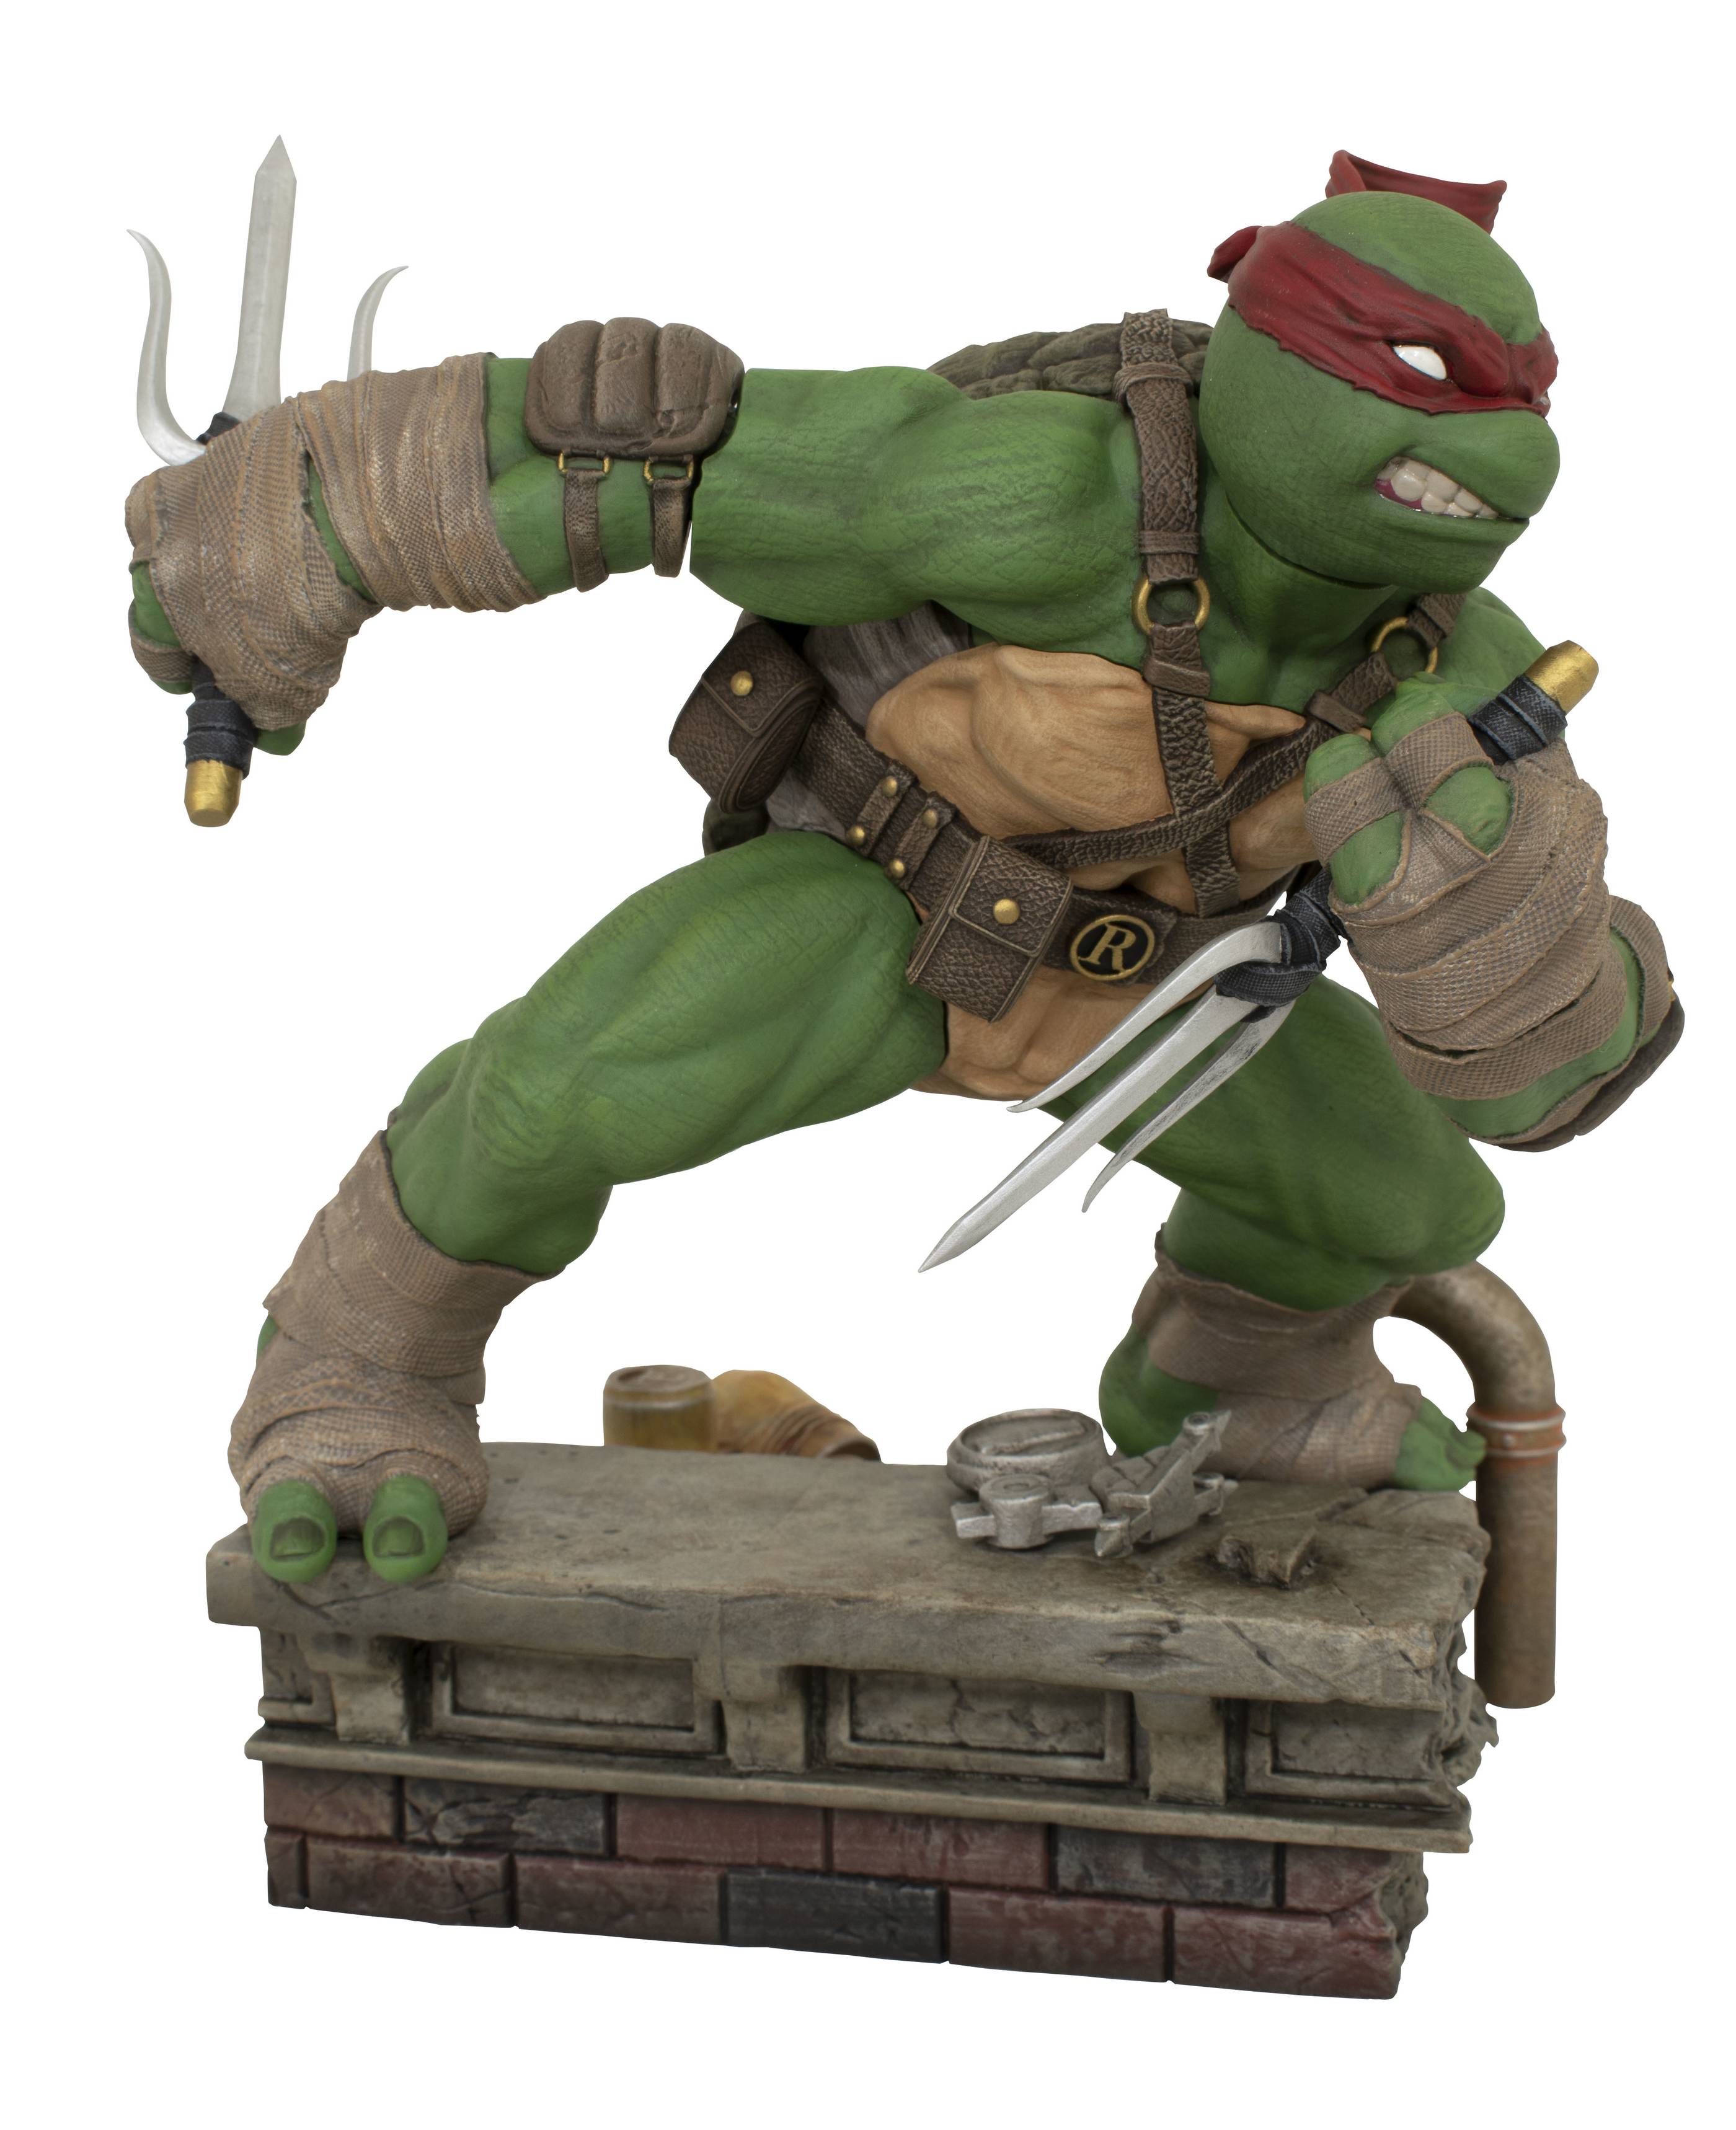 Raphael from Teenage Mutant Ninja Turtles